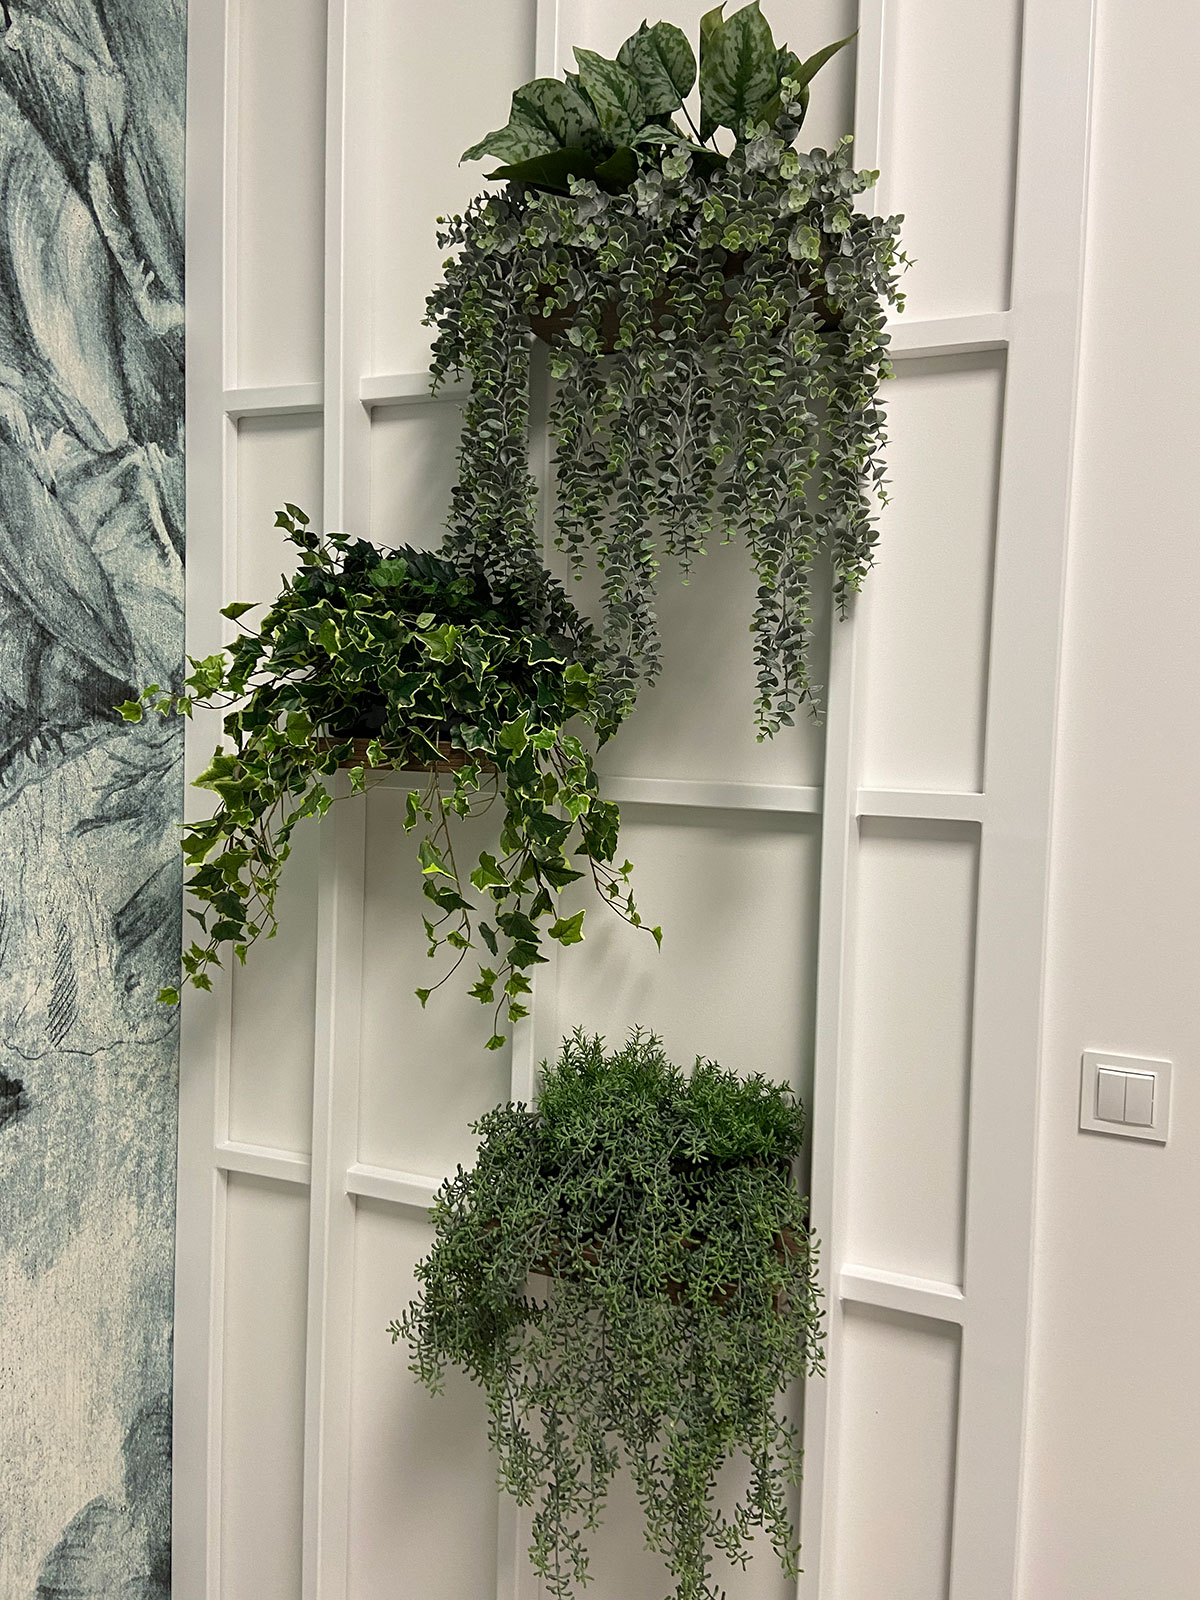 Trzy rośliny wiszą na ścianie w pokoju.